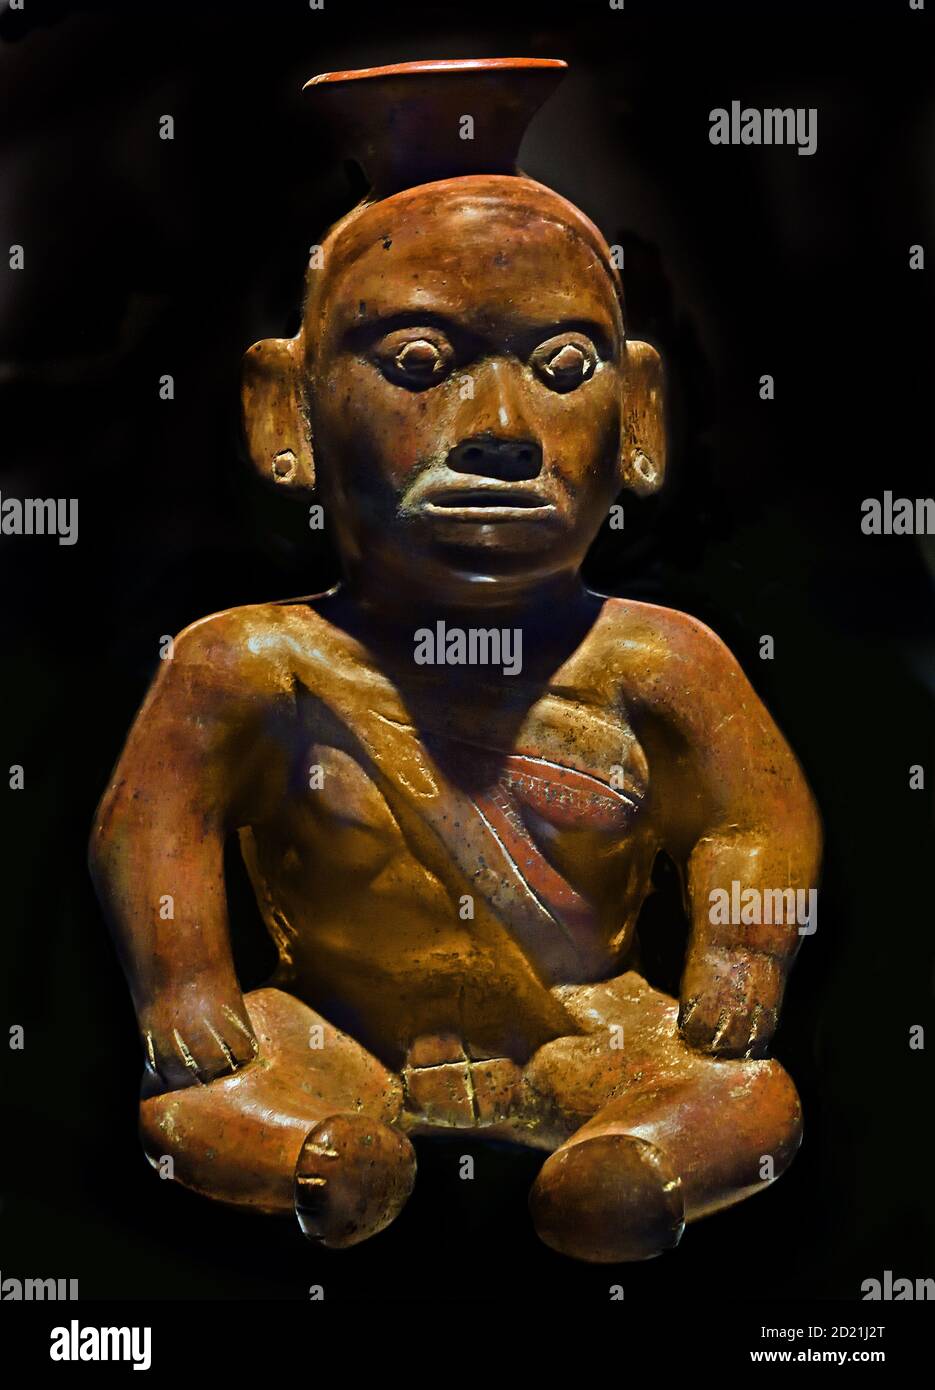 Gefäß, das einen deformierten Charakter im Sitzen darstellt. Lackierte Keramik. Colima-Stil. Antike und mittlere Klassik (100-700 n. Chr.). Mexiko Mexikaner, Amerika, Stockfoto